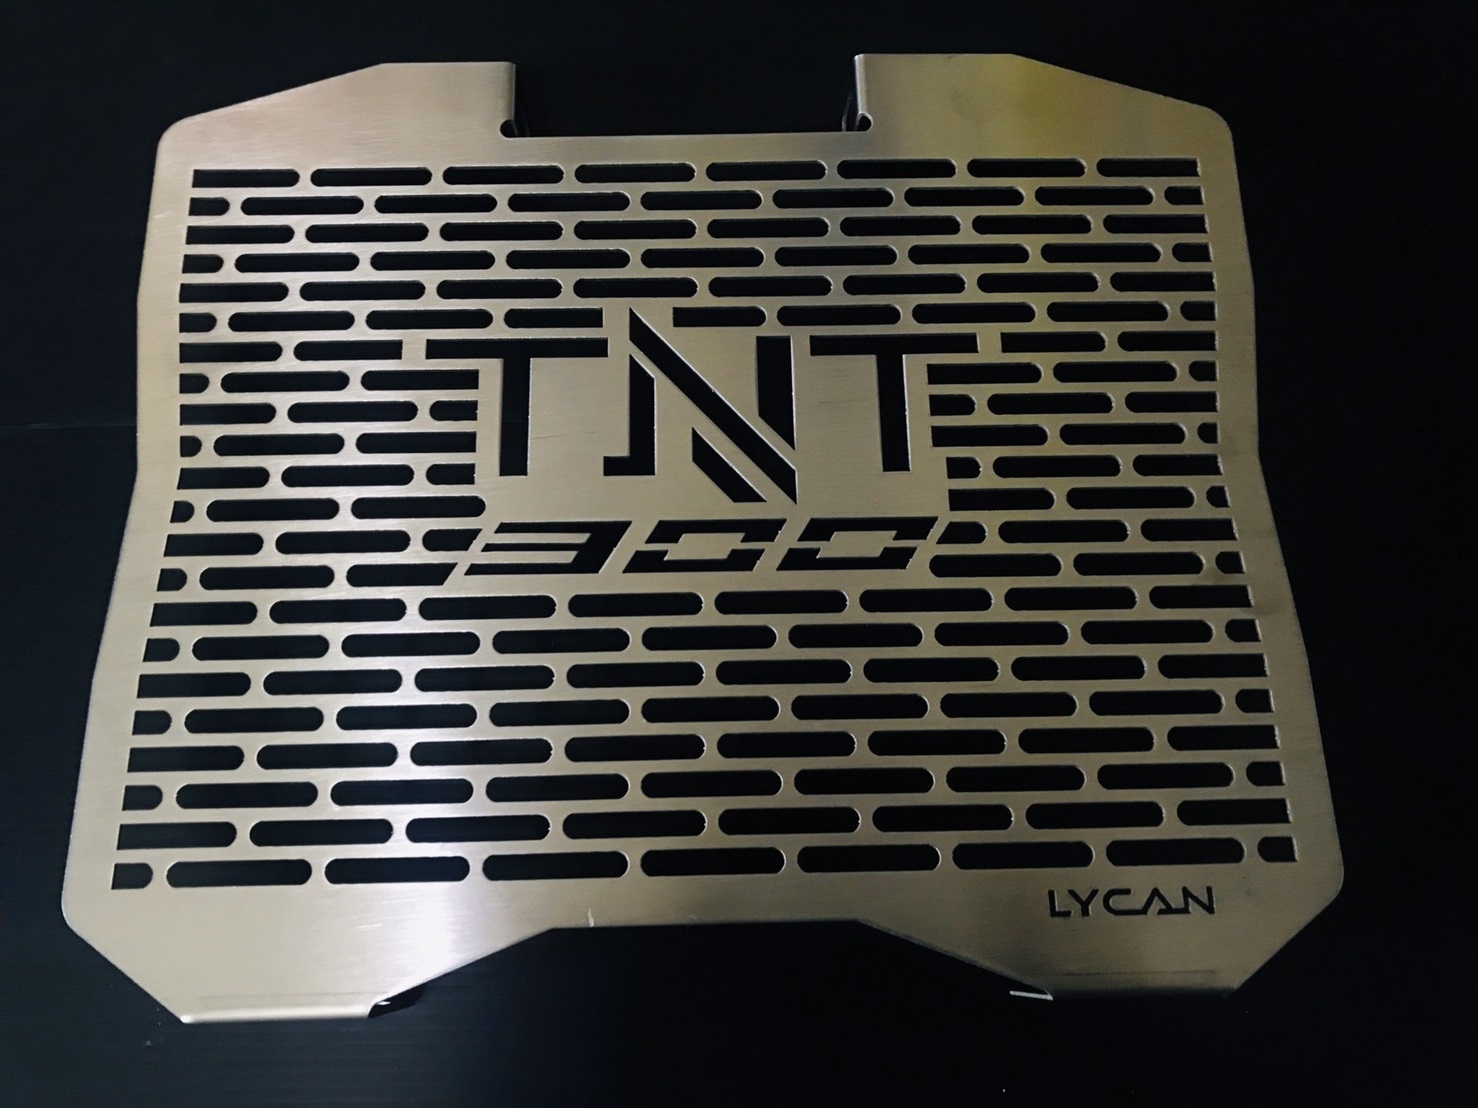 การ์ดหม้อน้ำ ของ LYCAN  สำหรับ TNT 300 ตรงรุ่น เลสเเท้  งาน เเท้ วัสดุ อย่างดี ป้องกันหม้อน้ำ เสียหาย จาก เศษ หิน หรือ การล้าง อัดฉีด ด้วย เครื่อง